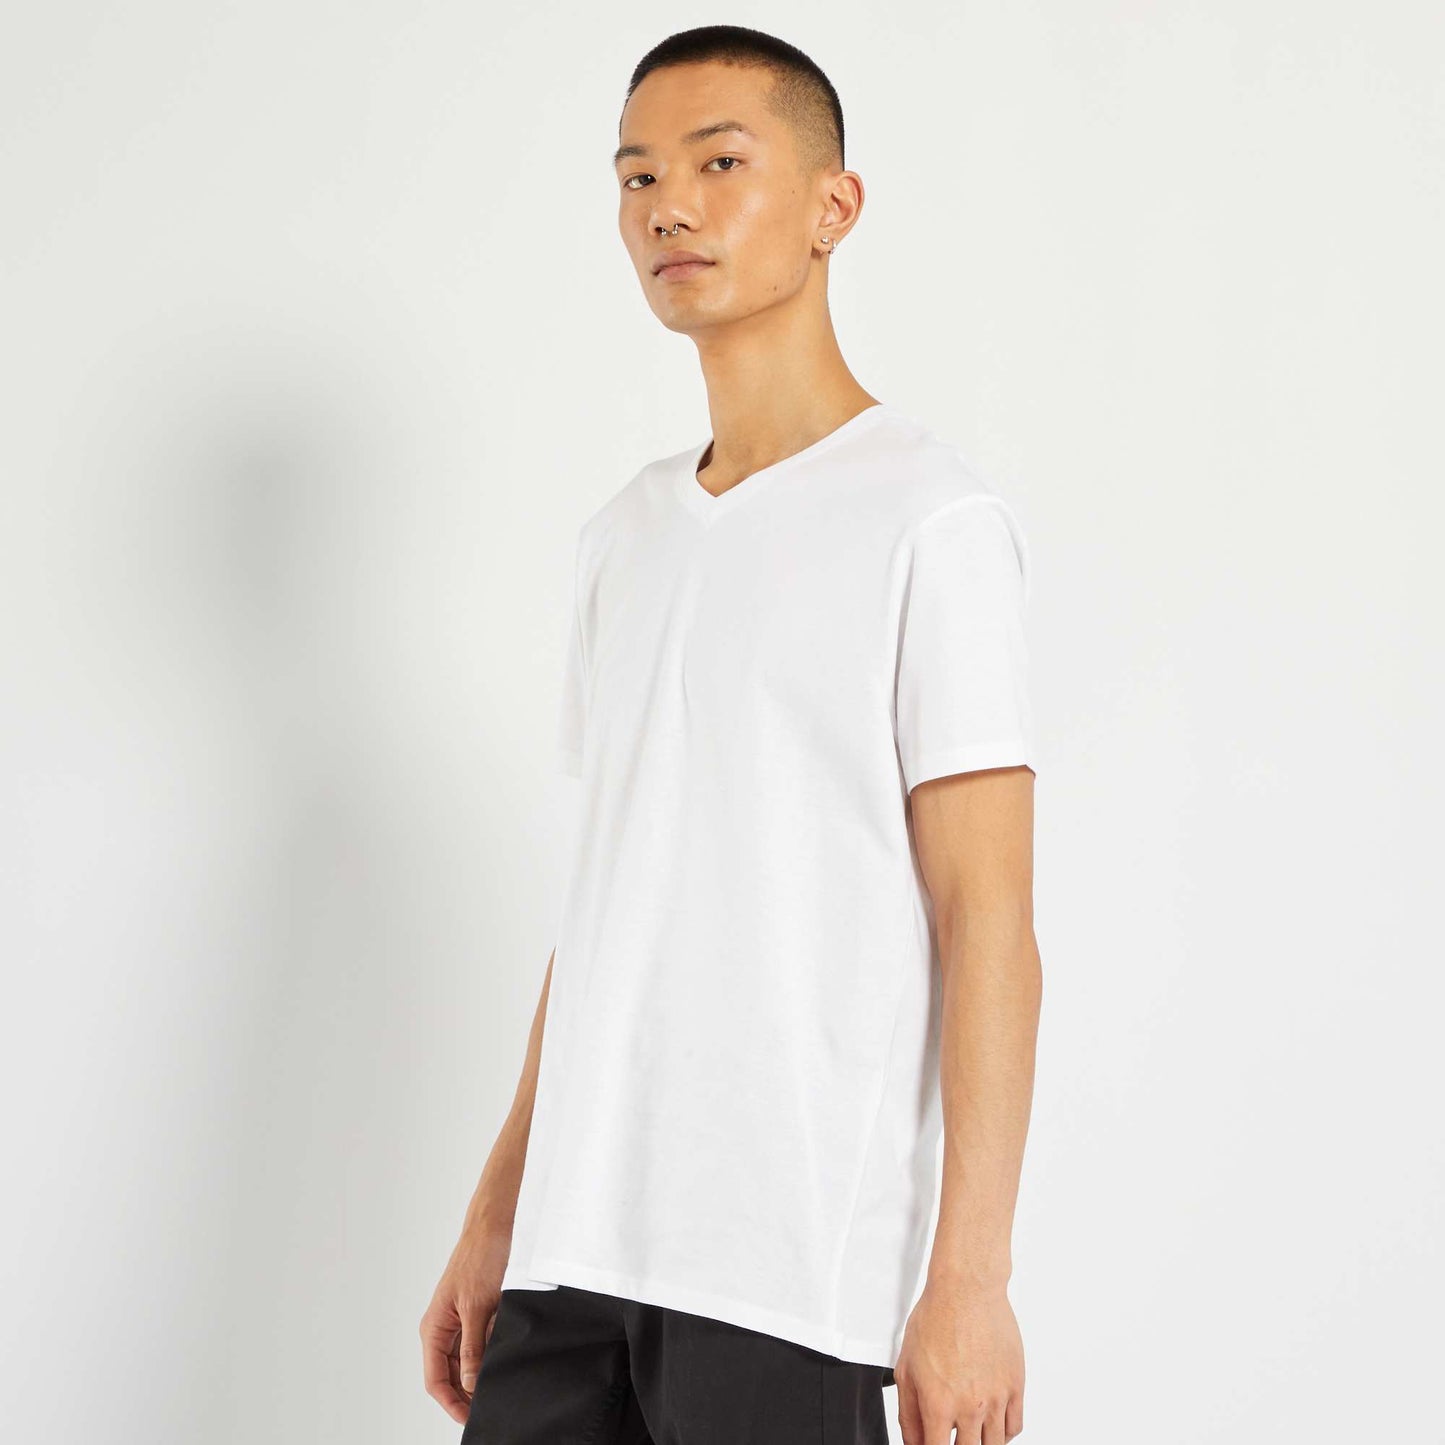 Regular cotton V-neck T-shirt white